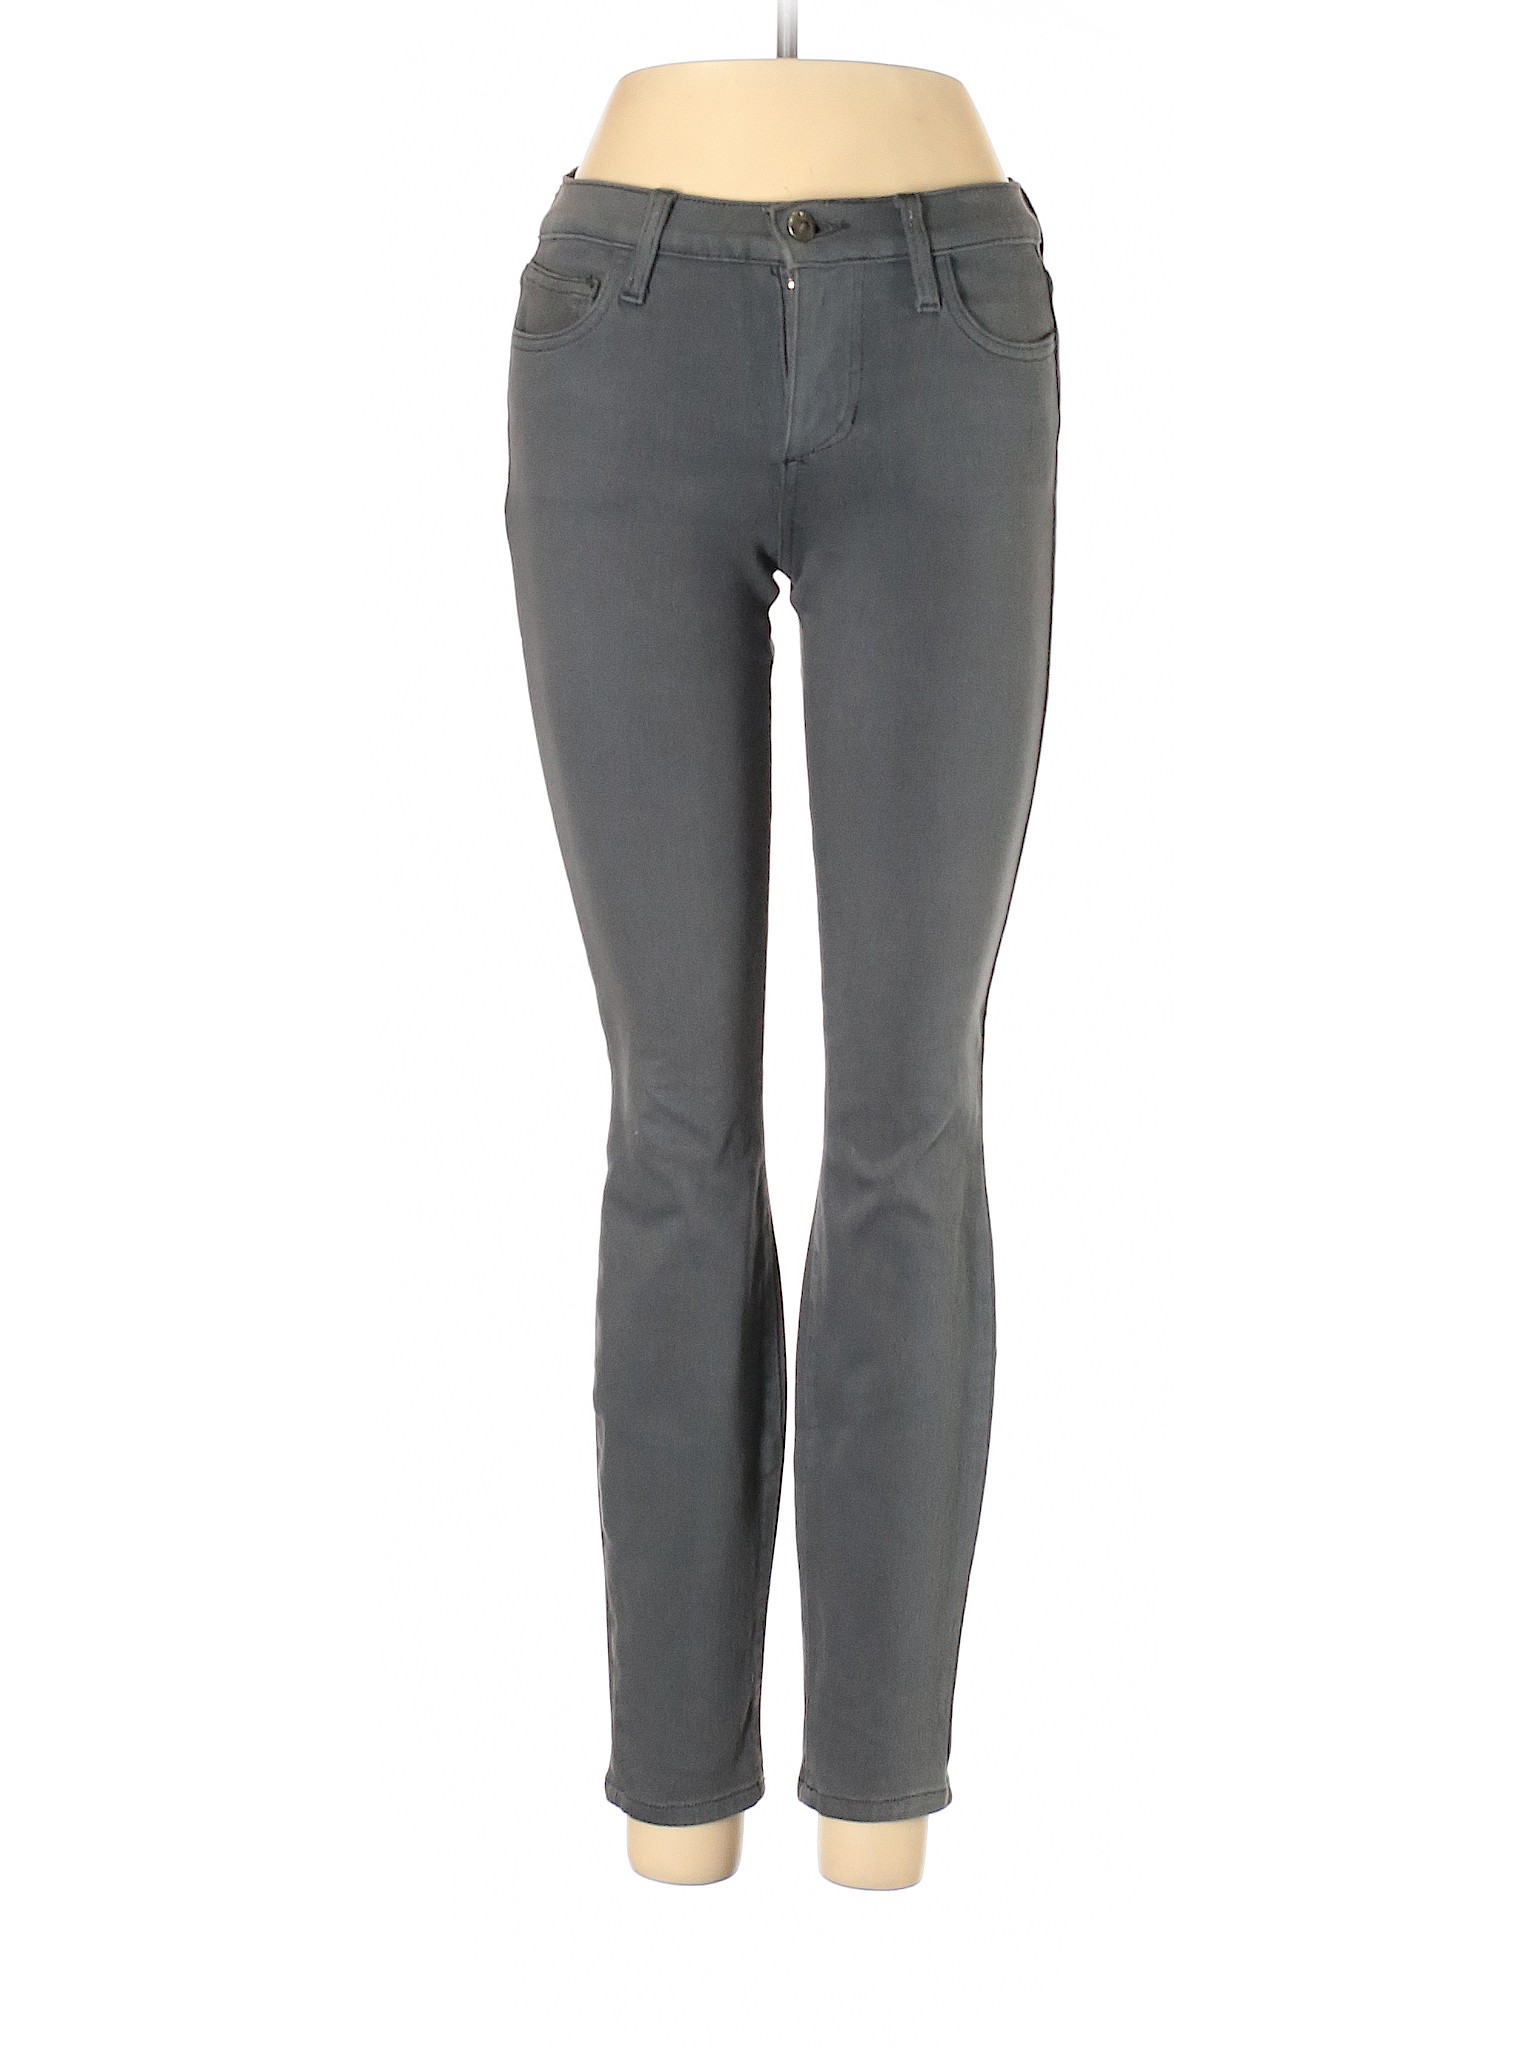 Joe's Jeans Women Gray Jeans 25W | eBay